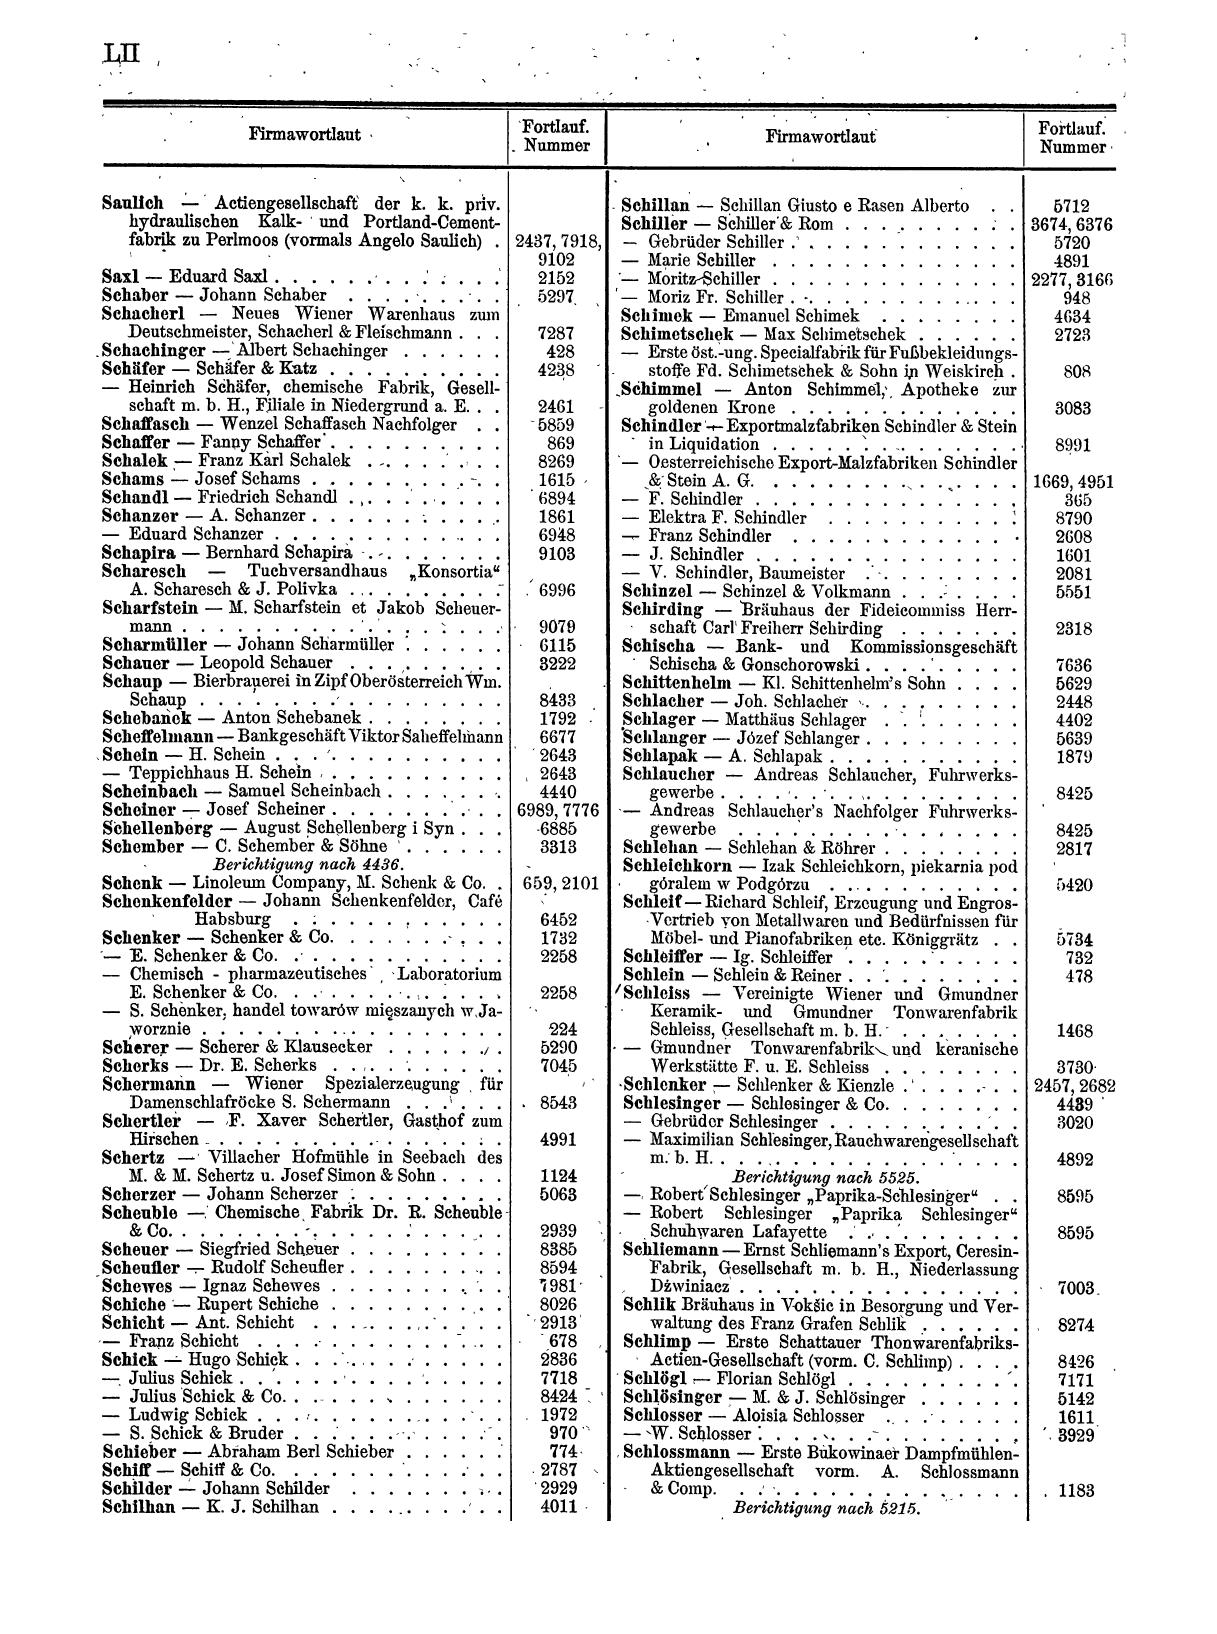 Zentralblatt für die Eintragungen in das Handelsregister 1913, Teil 1 - Seite 60